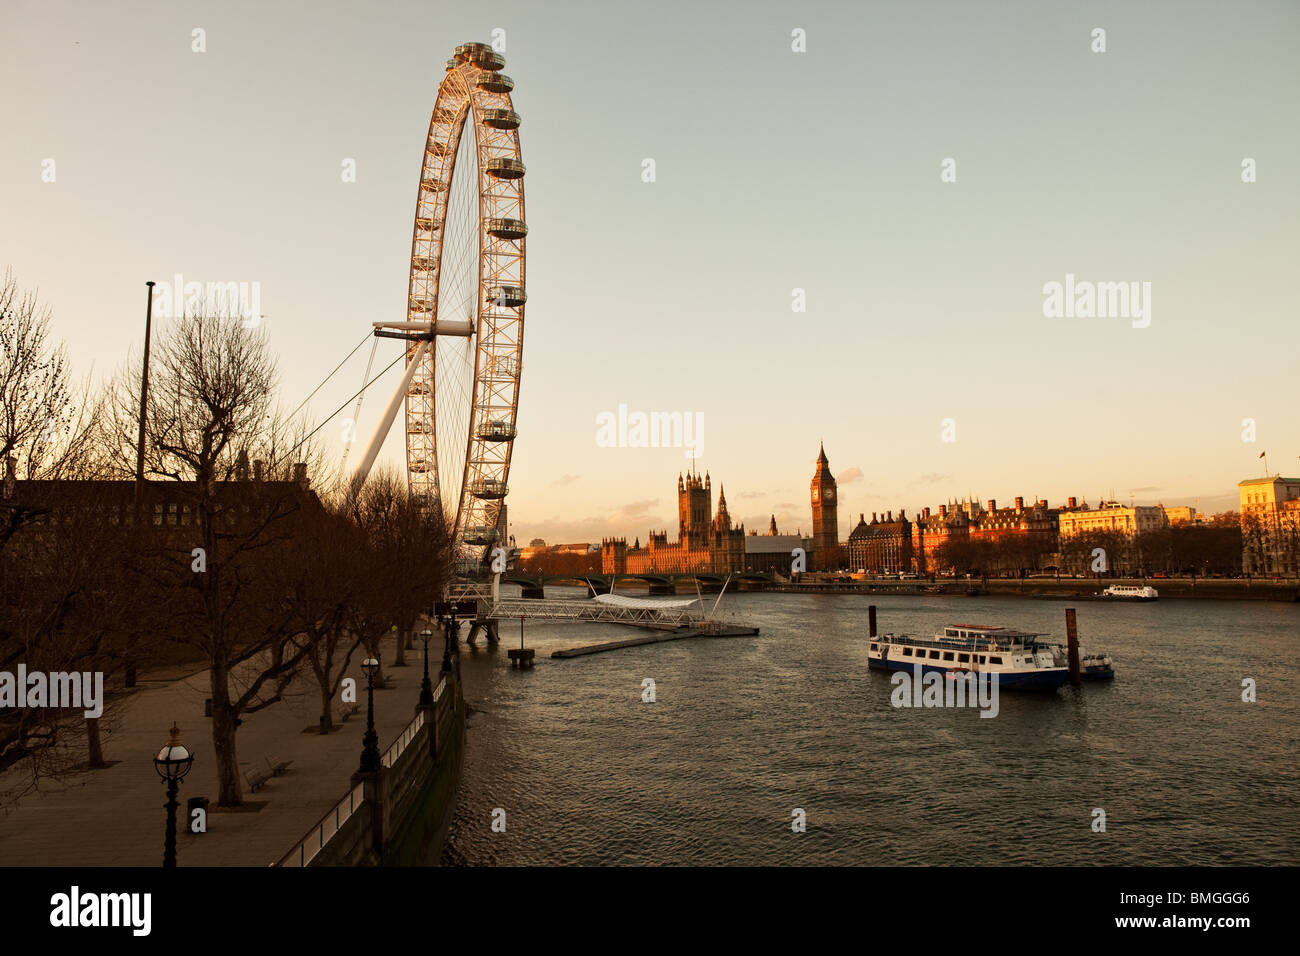 Le London Eye, baigné de lumière avec moody le Parlement et Big Ben sur la Tamise Banque D'Images